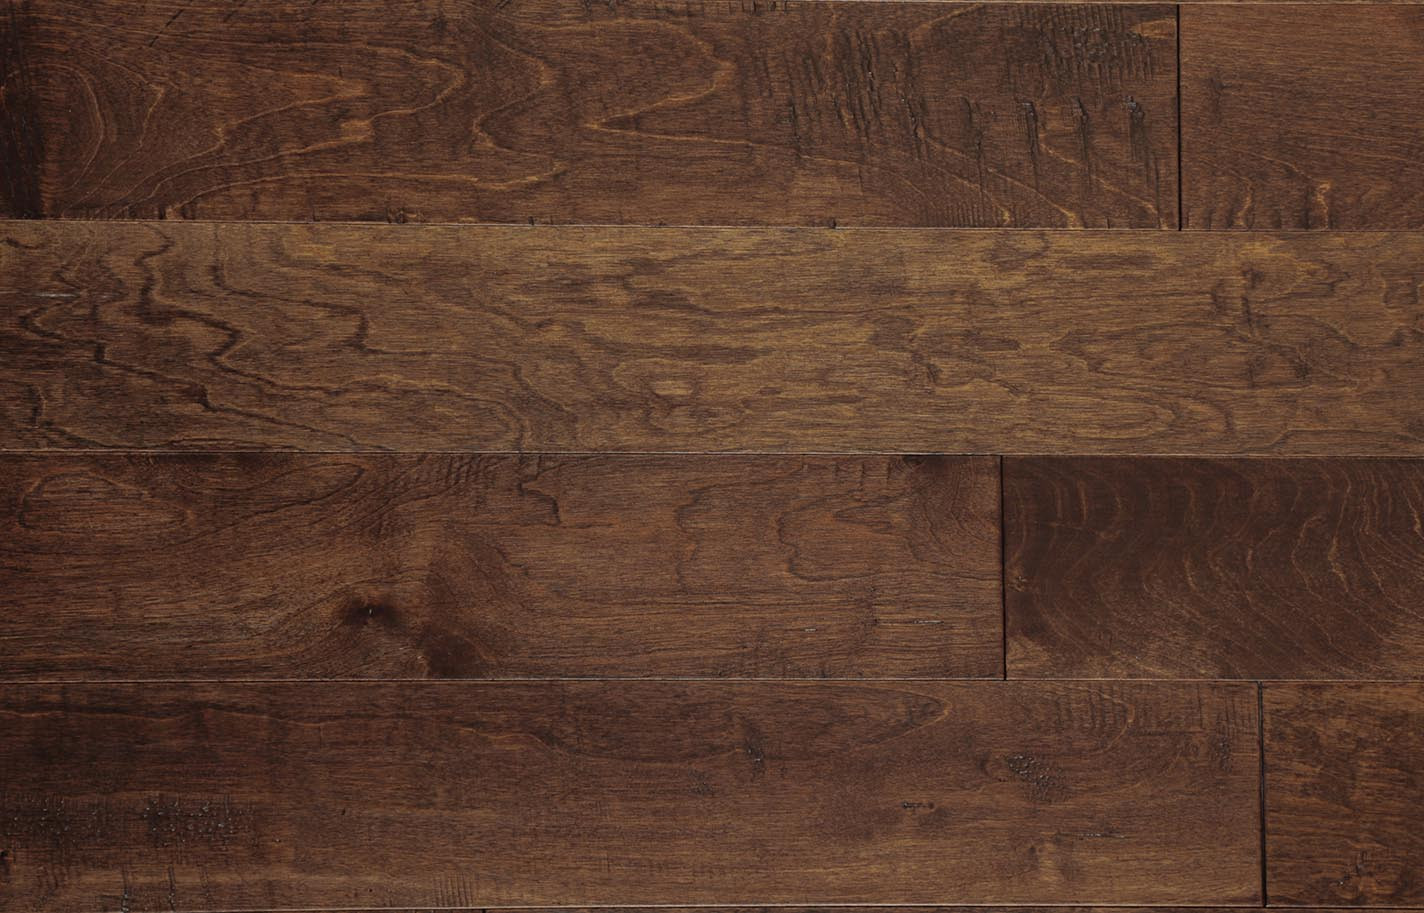 29 Elegant Janka Rating for Hardwood Floors 2024 free download janka rating for hardwood floors of hardwood flooring inside harvest birch